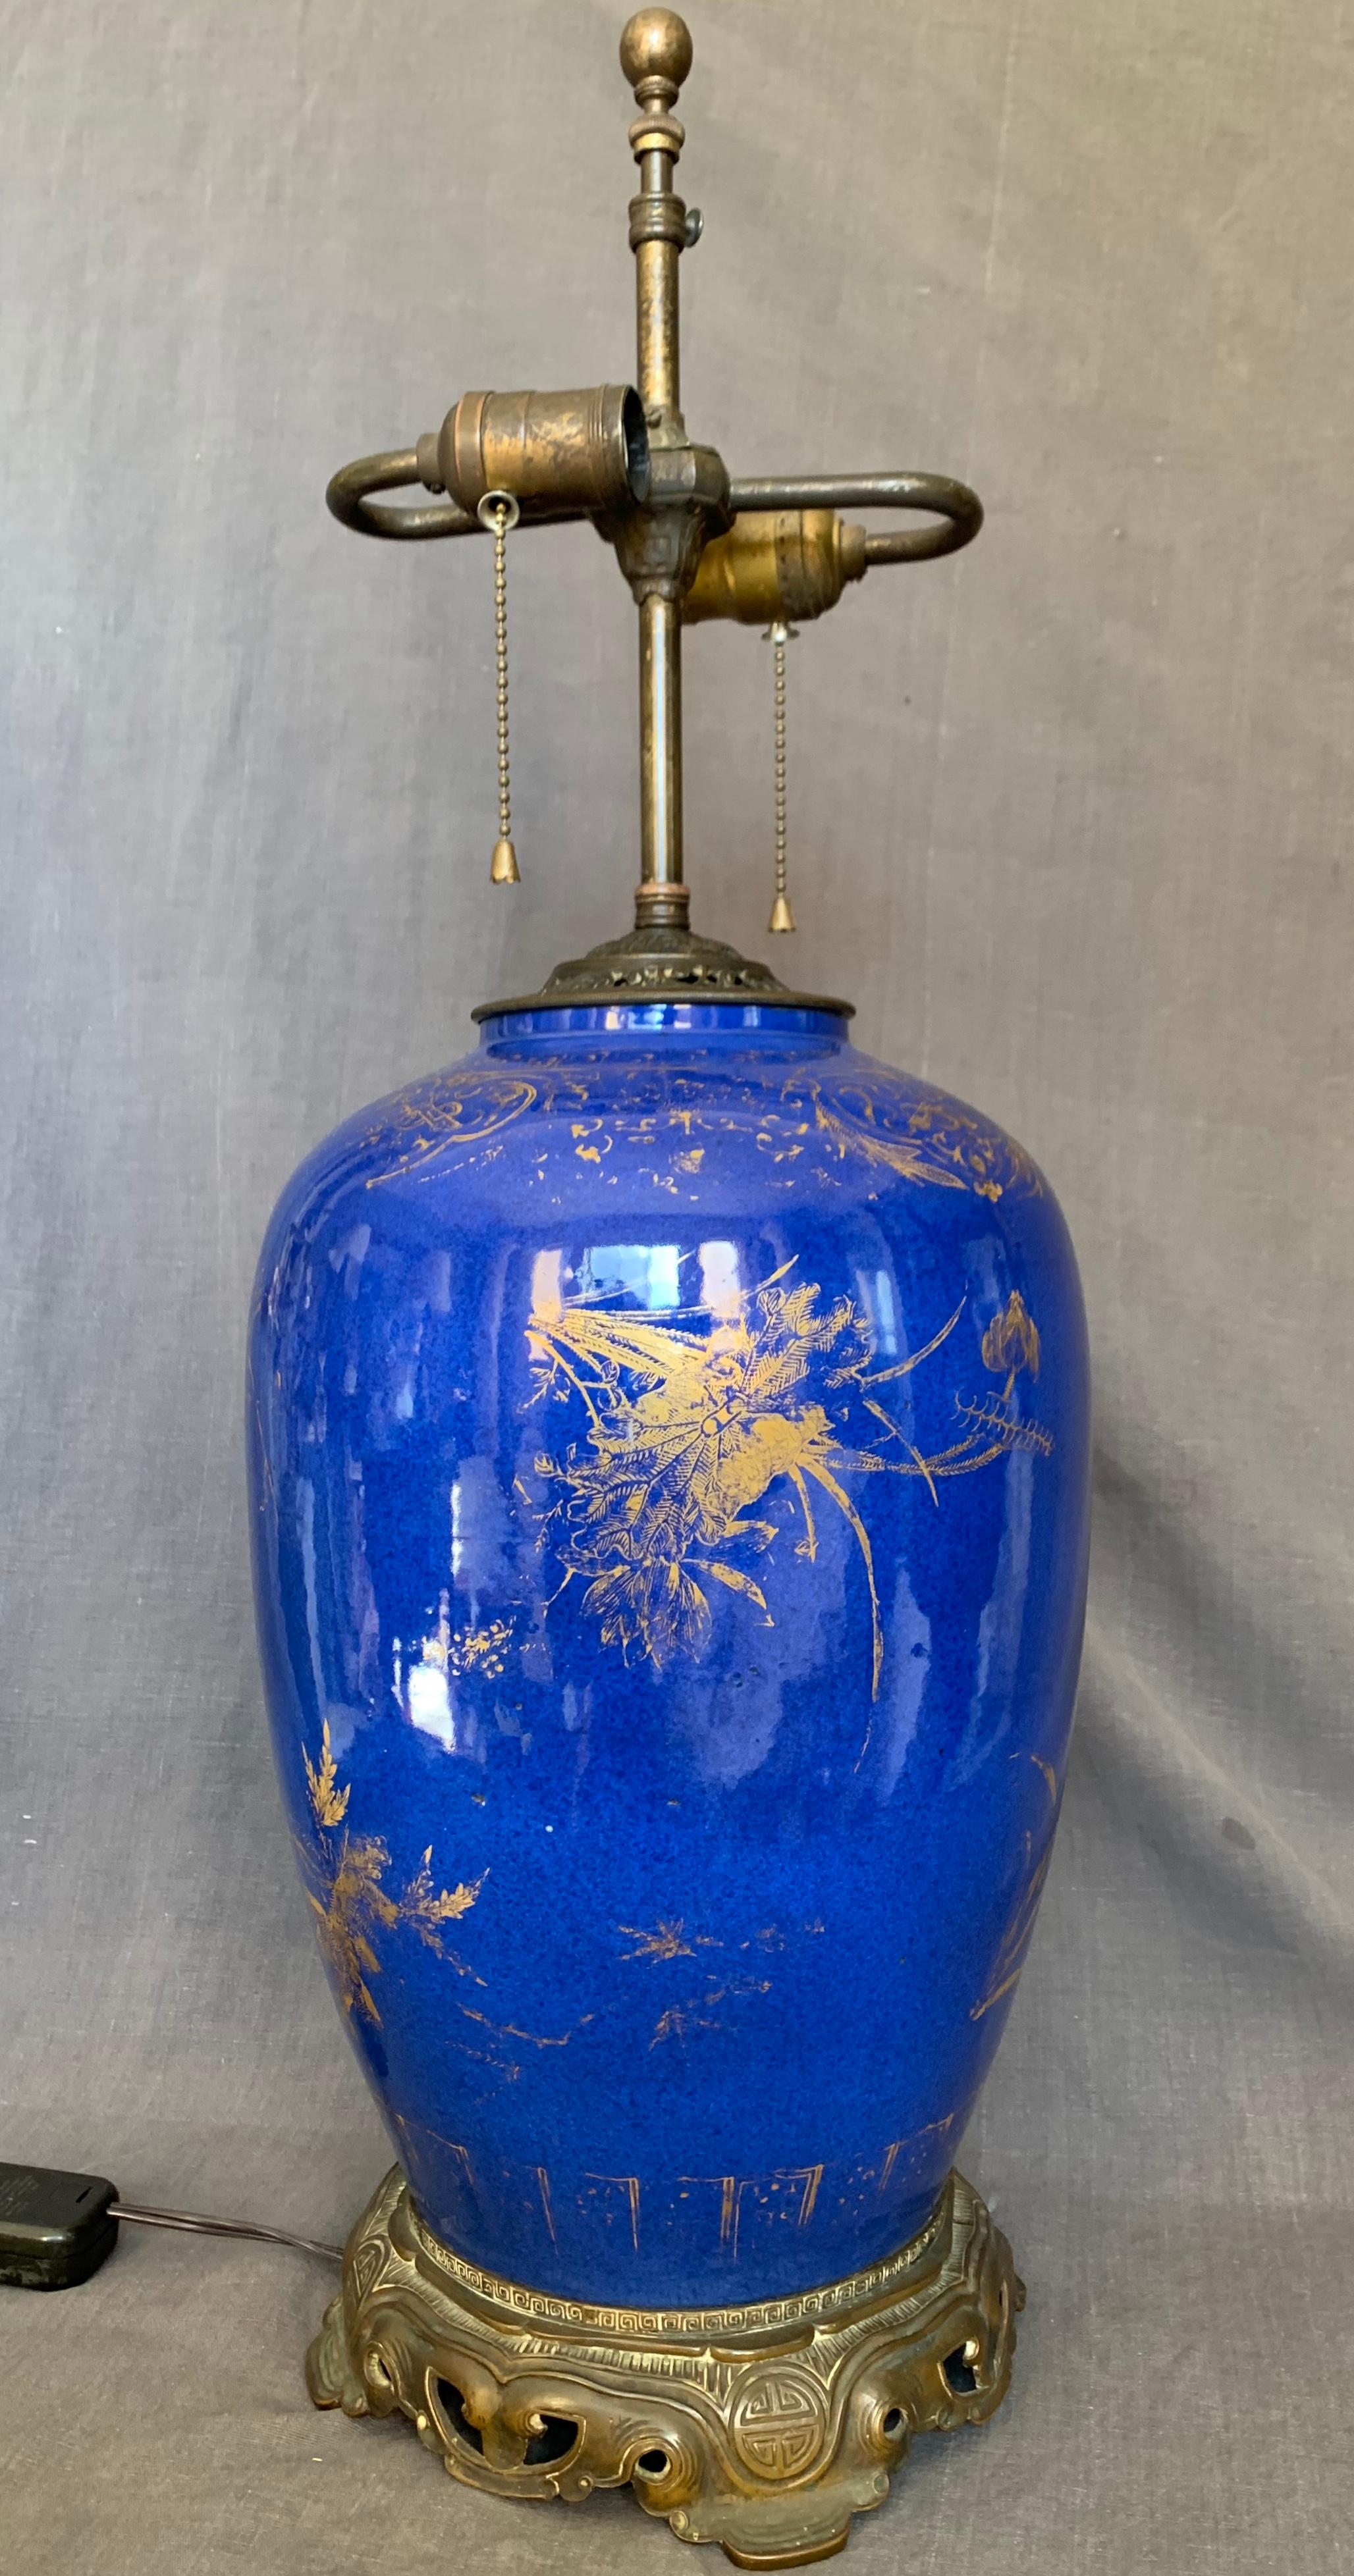 Grande lampe Kangxi bleu poudré et doré Grand vase de style Kangxi préalablement percé et avec des montures en bronze à motifs orientaux personnalisées, équipé pour l'électricité avec une tige à deux ampoules et un cordon avec interrupteur, Chine,